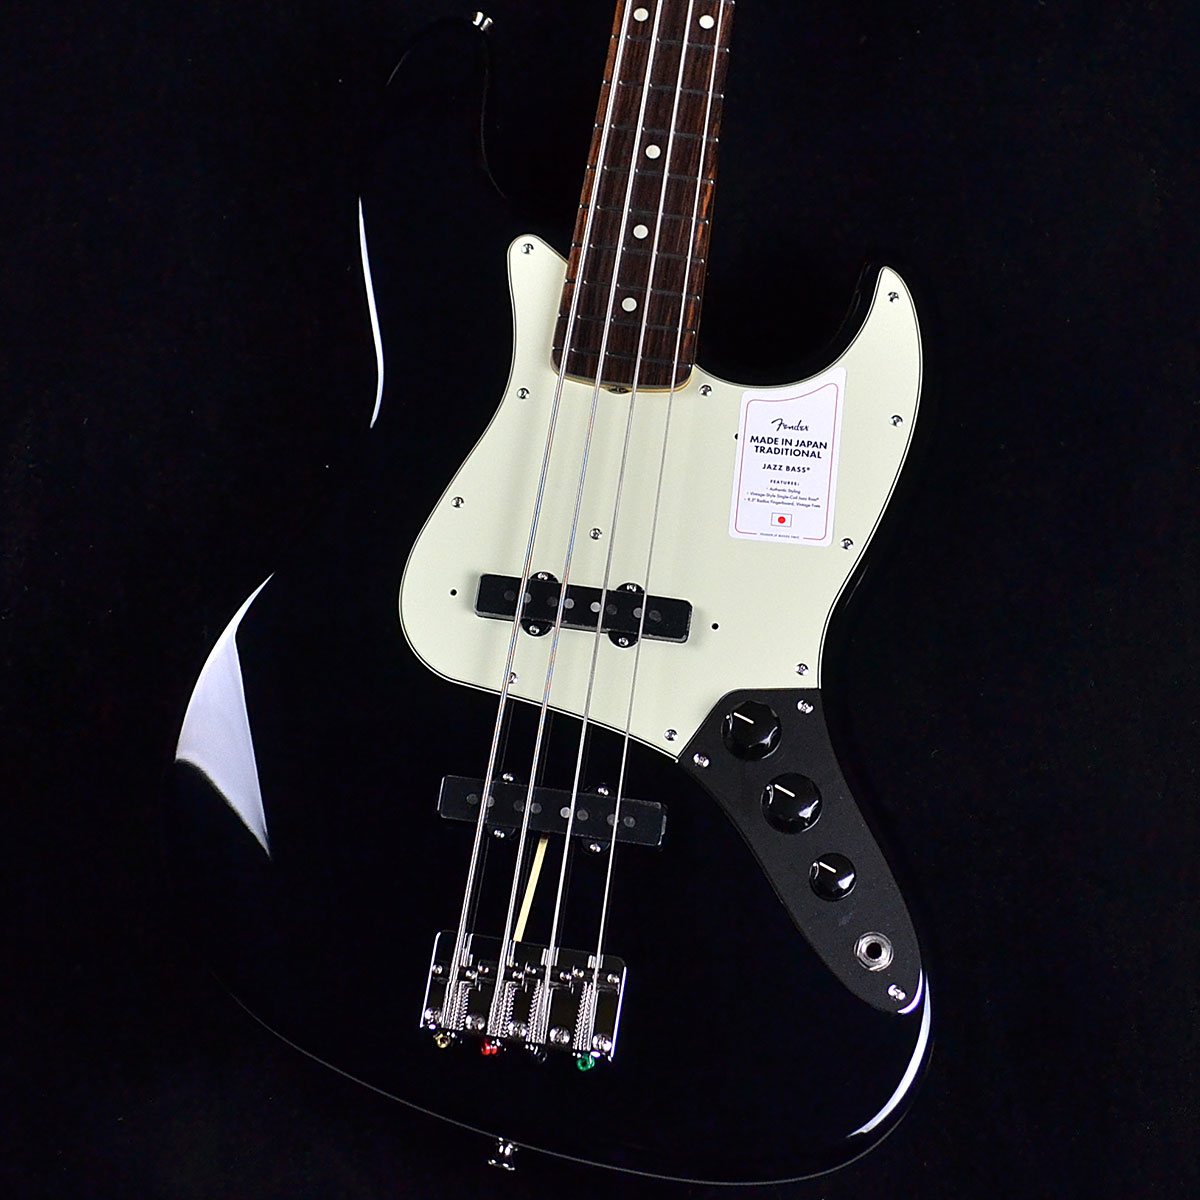 Fender Japan フェンダージャパン JAZZ BASS ジャズベース未使用品展示品等の開封品